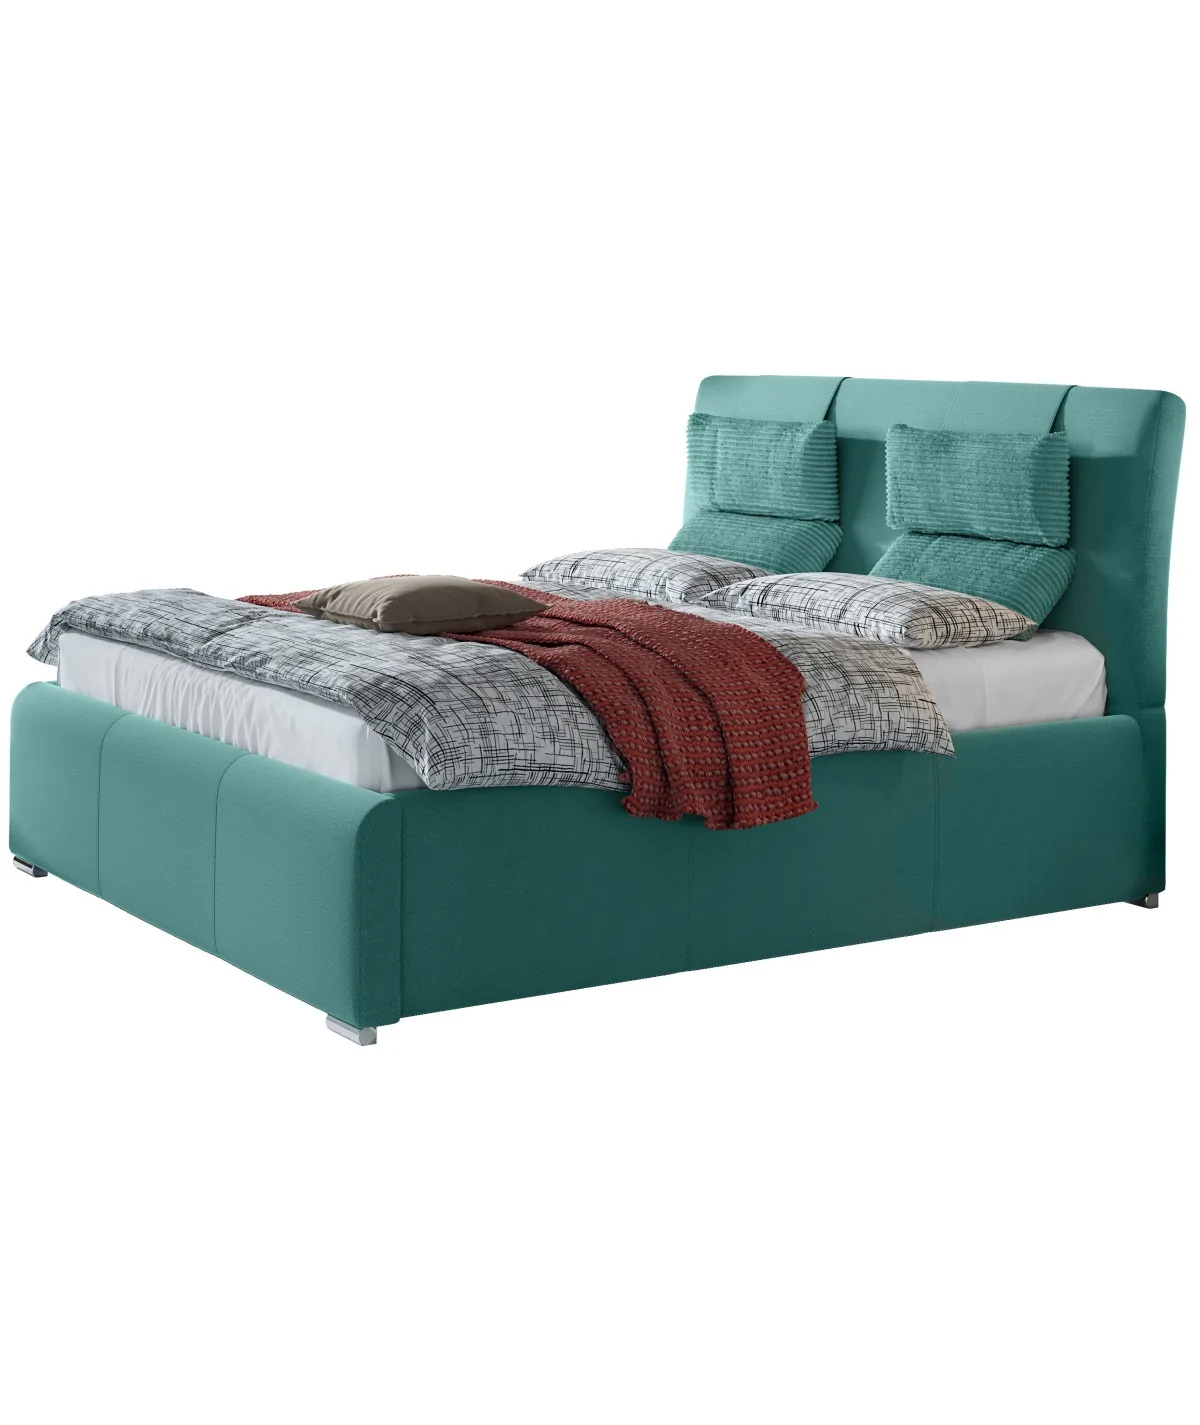 Łóżko Orlean od firmy Comforteo